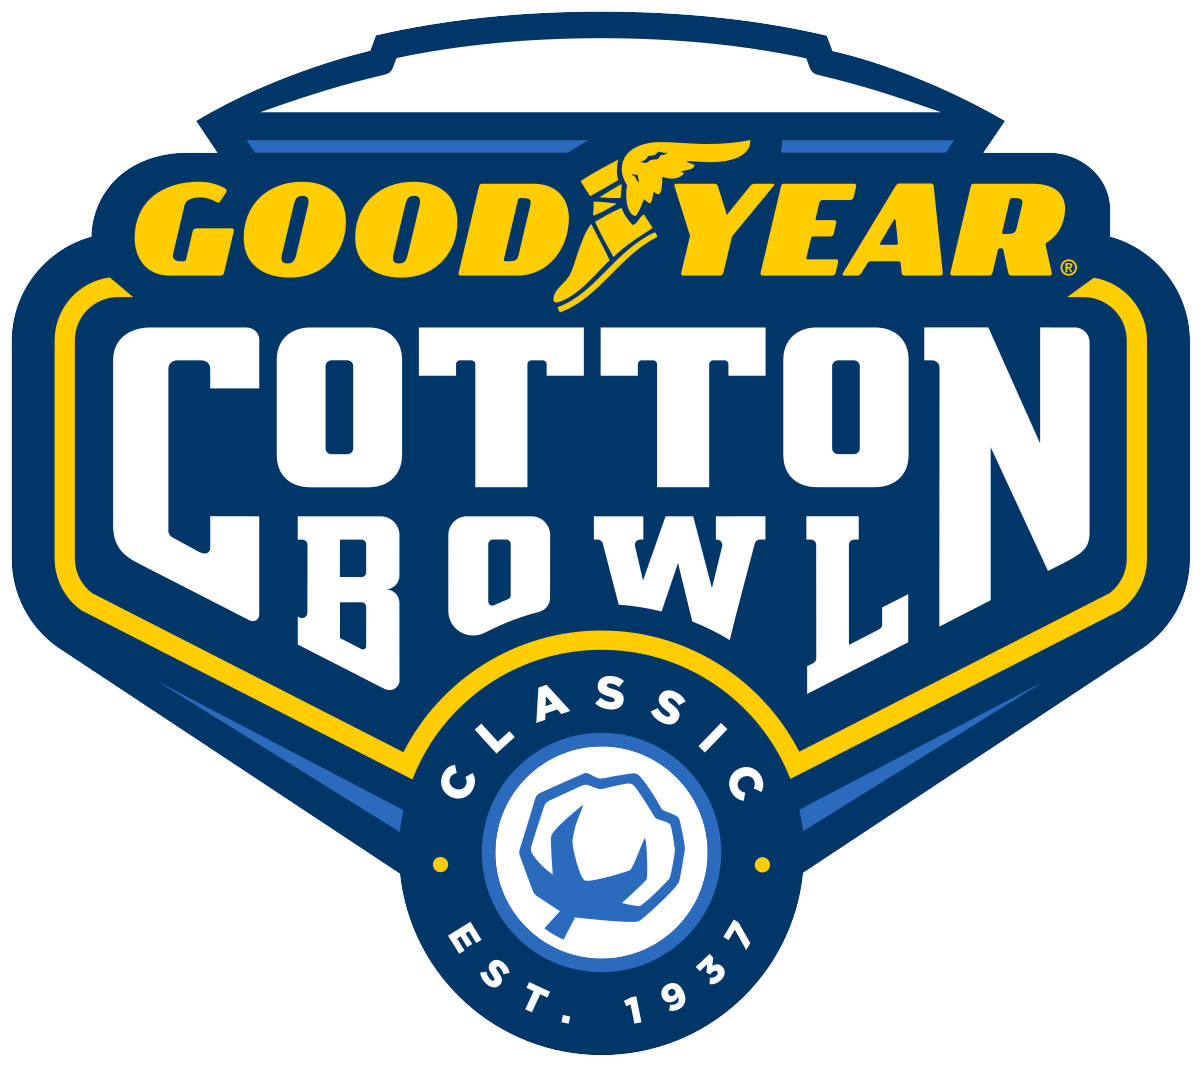 Cotton Bowl Festivities in Dallas